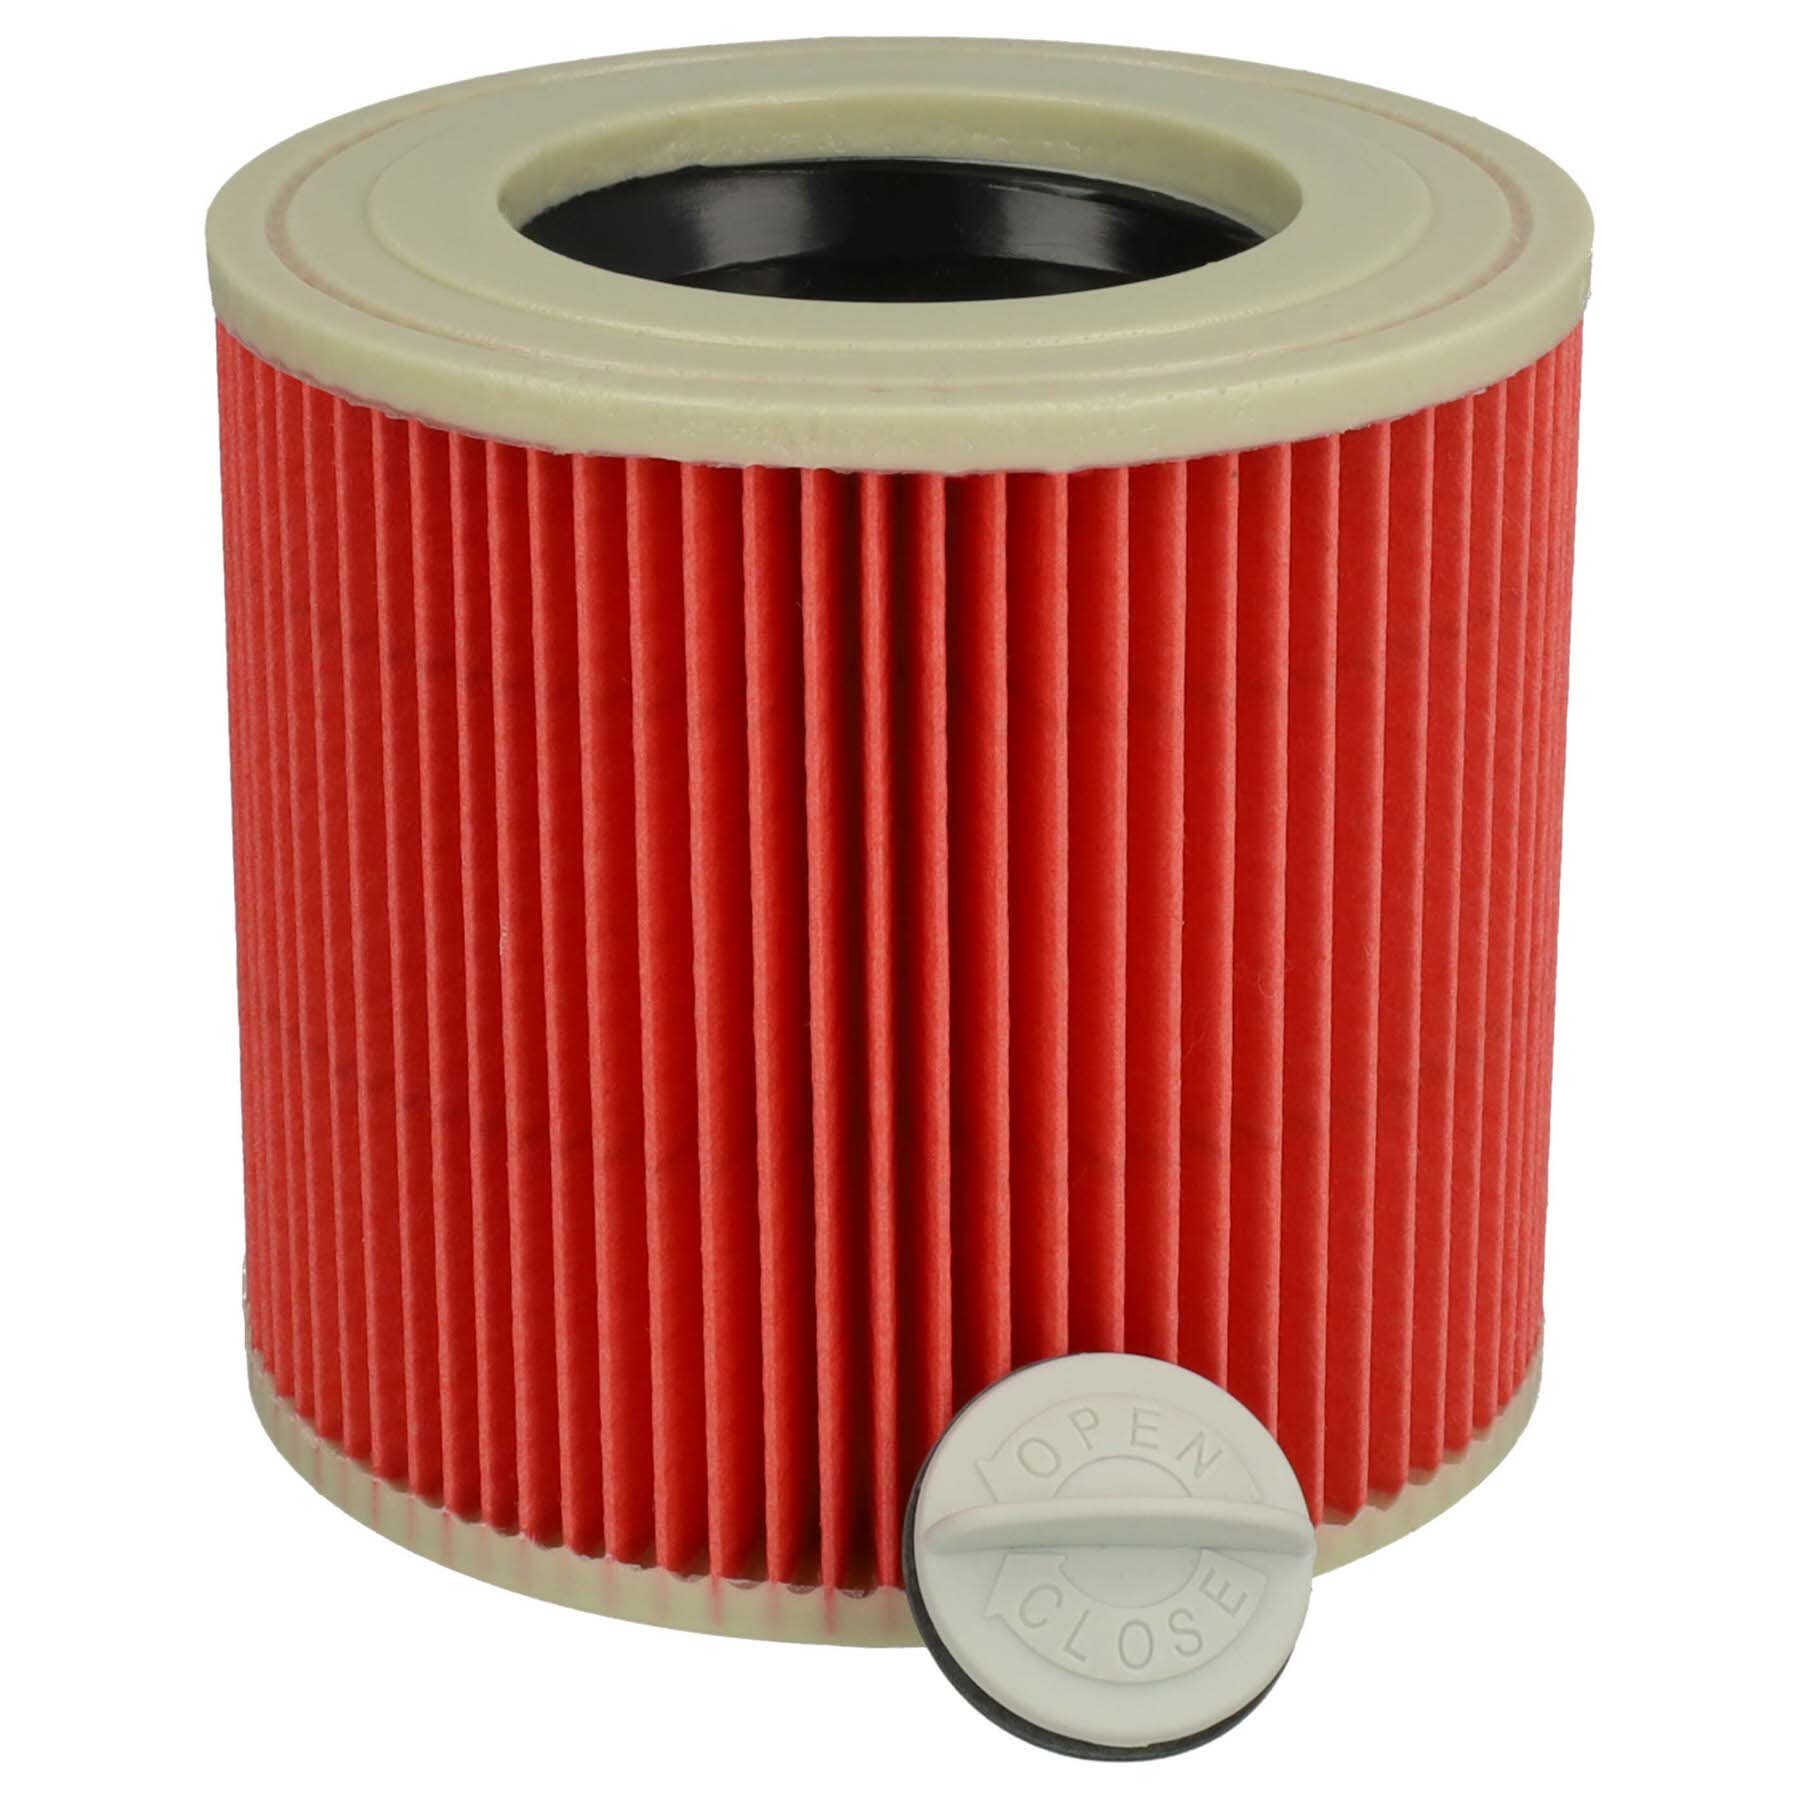 Vhbw Lot de 2x filtres à cartouche compatible avec Kärcher WD3P Extension  Kit, WD 3 Premium aspirateur à sec ou humide - Filtre plissé, jaune